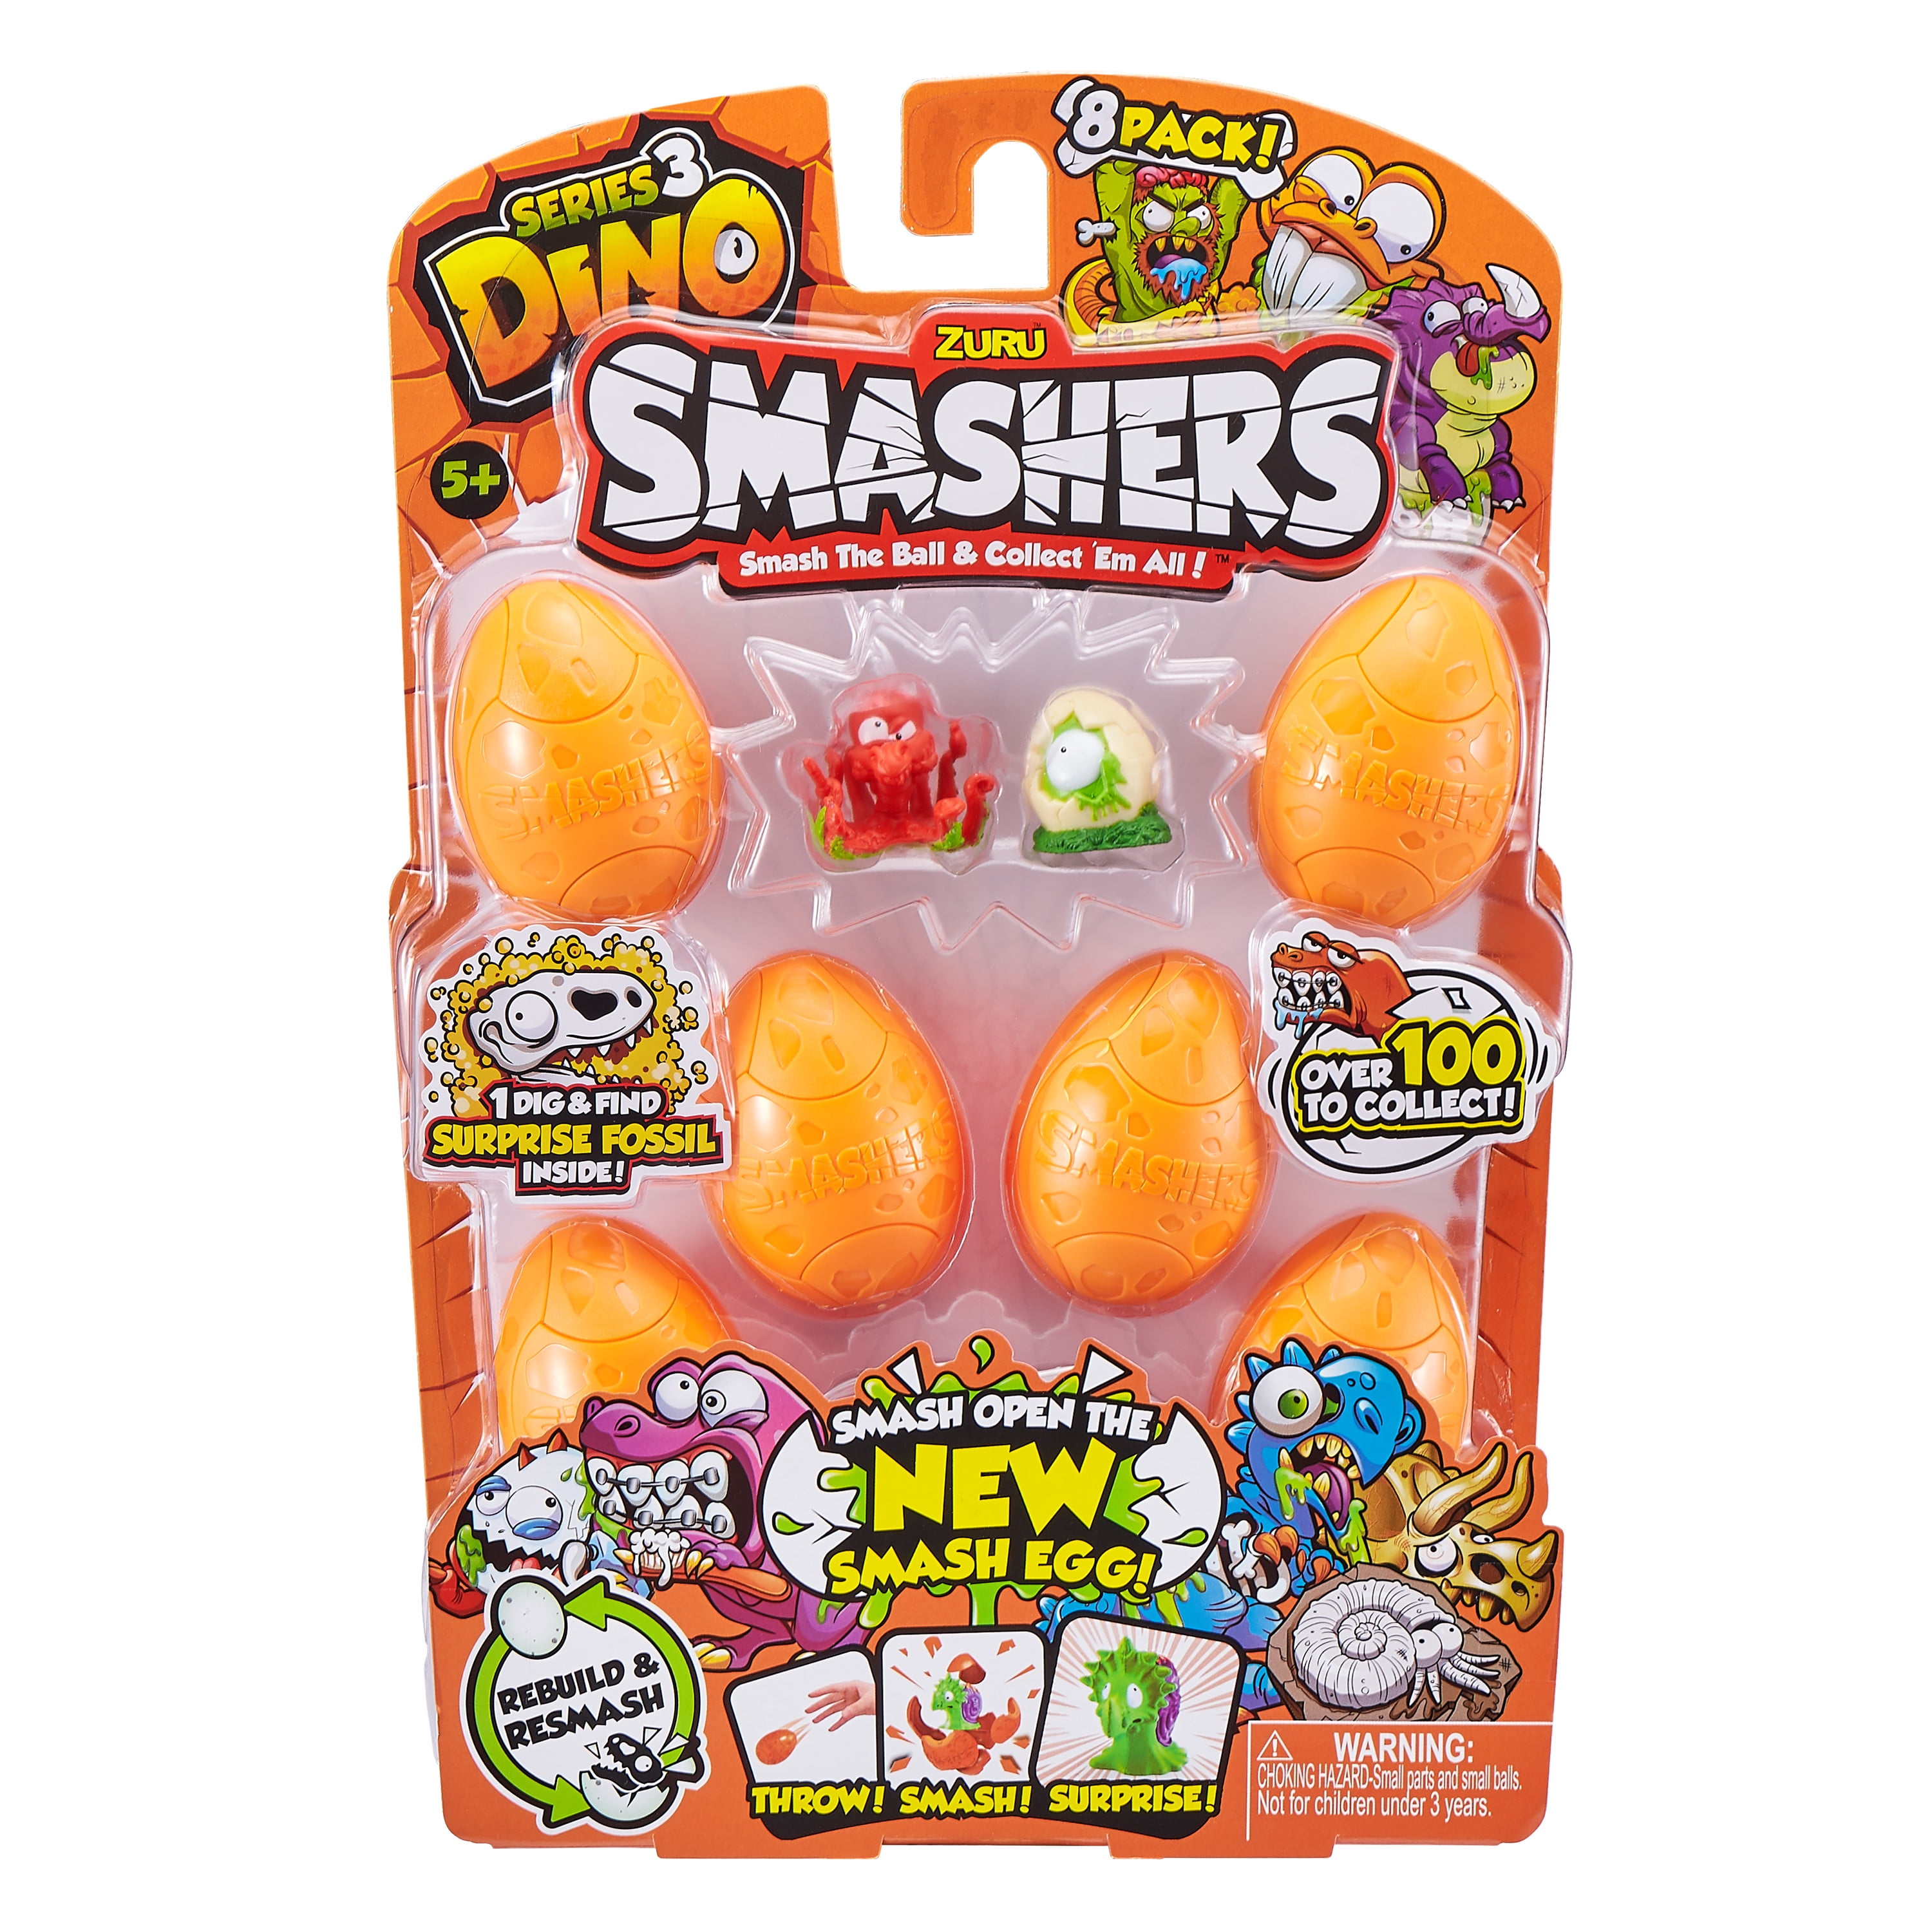 8 Pack Fun Dinosaur Toys NEW Smashers Series 3 Dino 